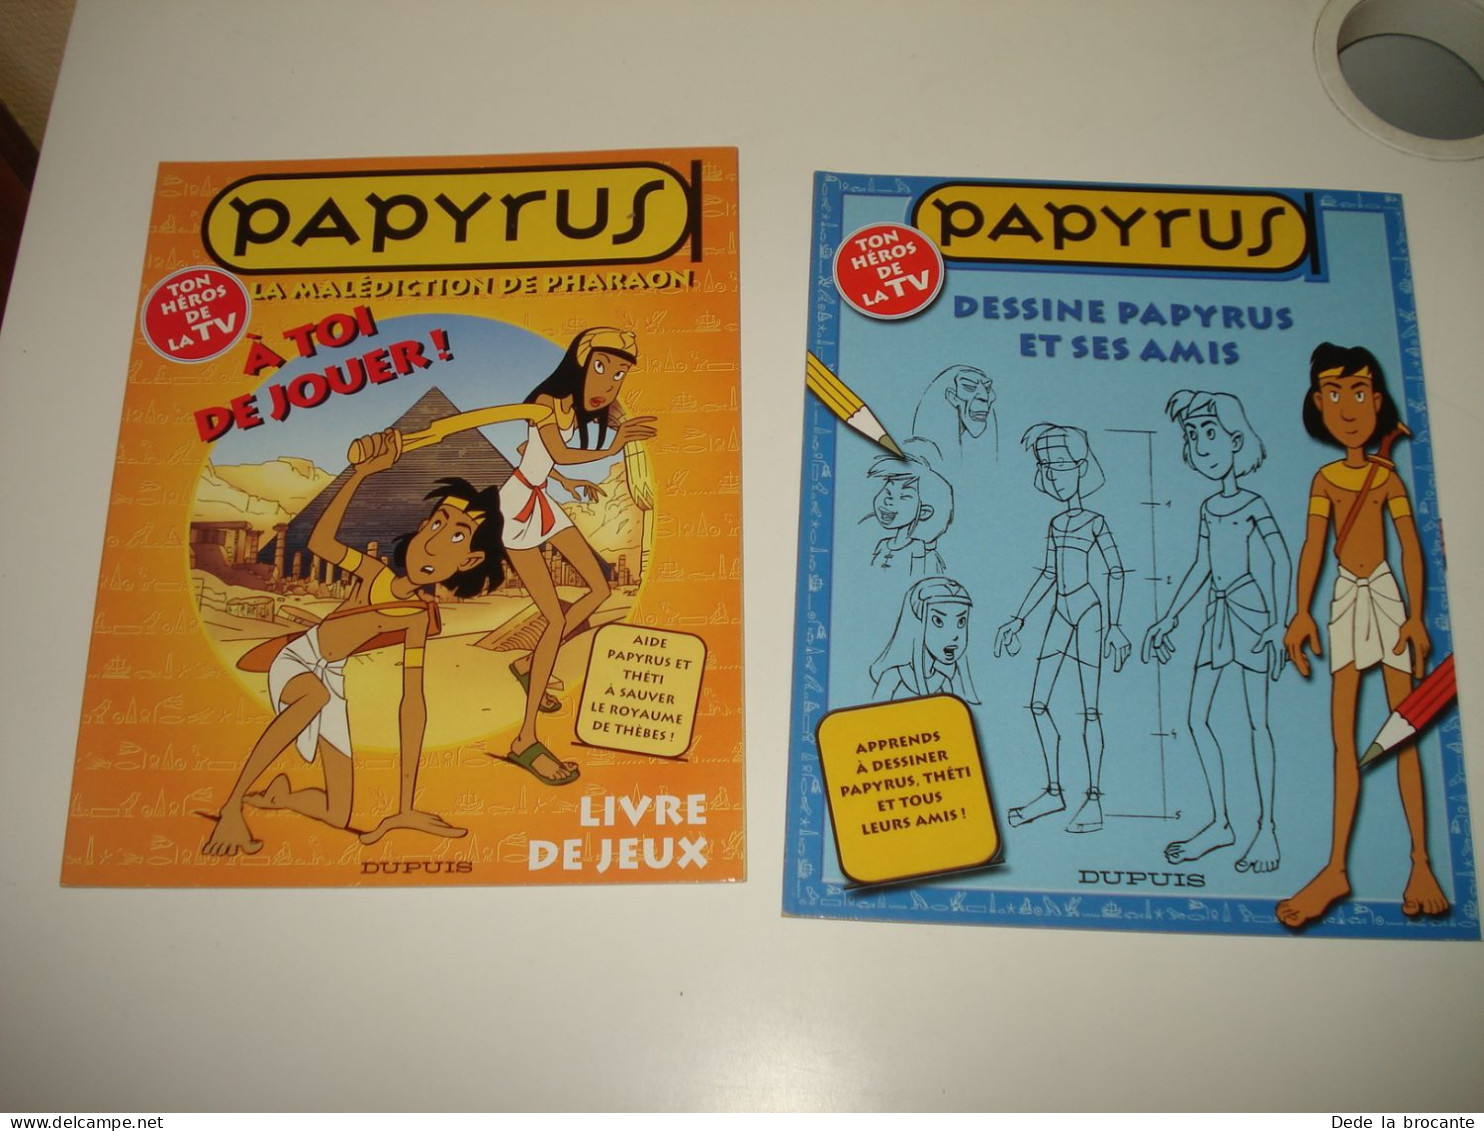 C48 / Lot de 8 Papyrus  jeux - Jouez avec Papyrus  - Etat neuf - 2001